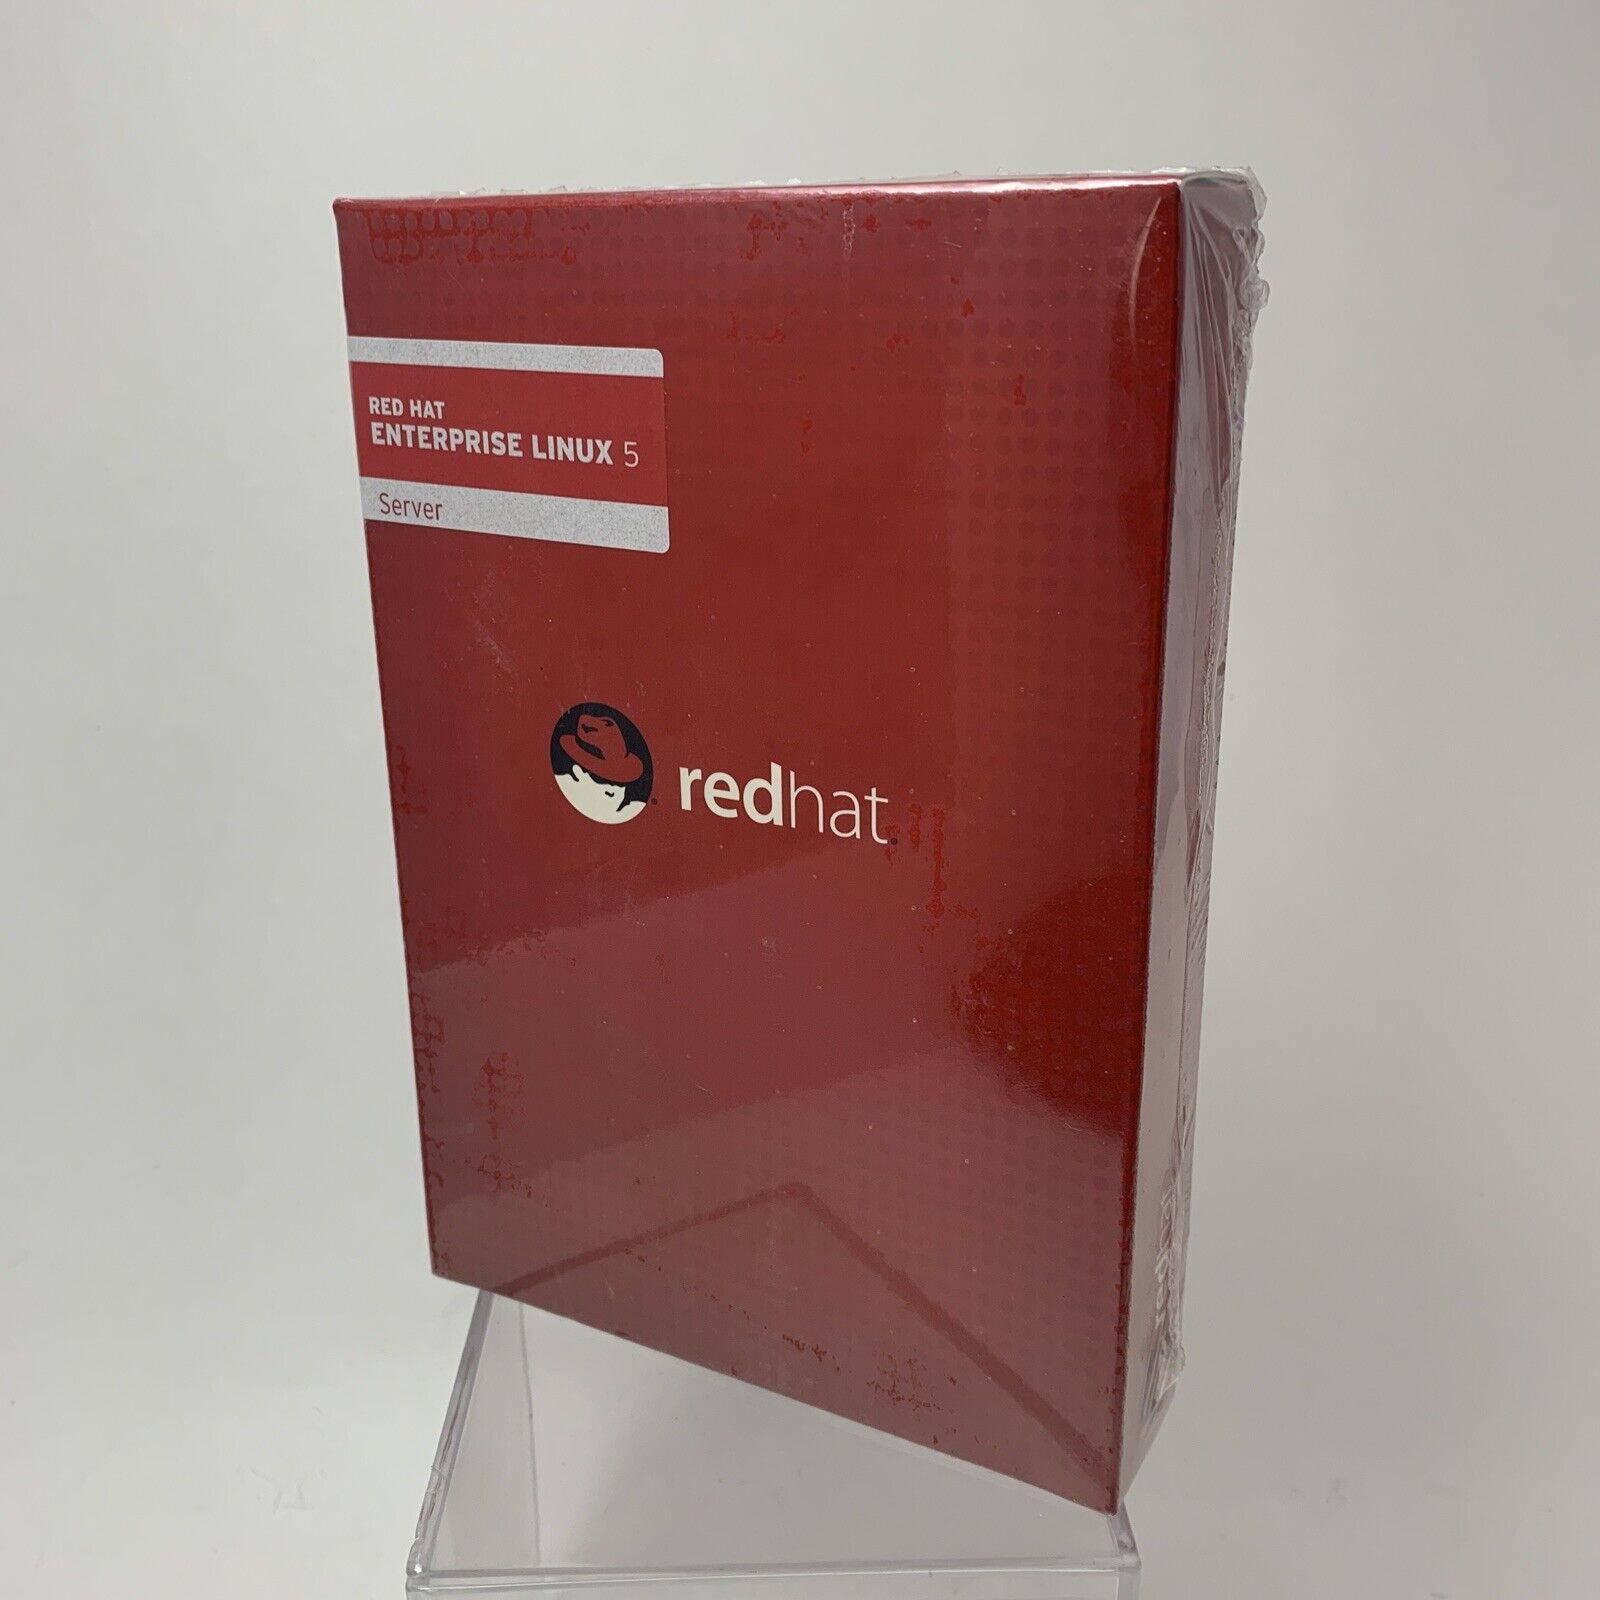 Red Hat Enterprise Linux 5 Client (RHF0373US-R3) Server 